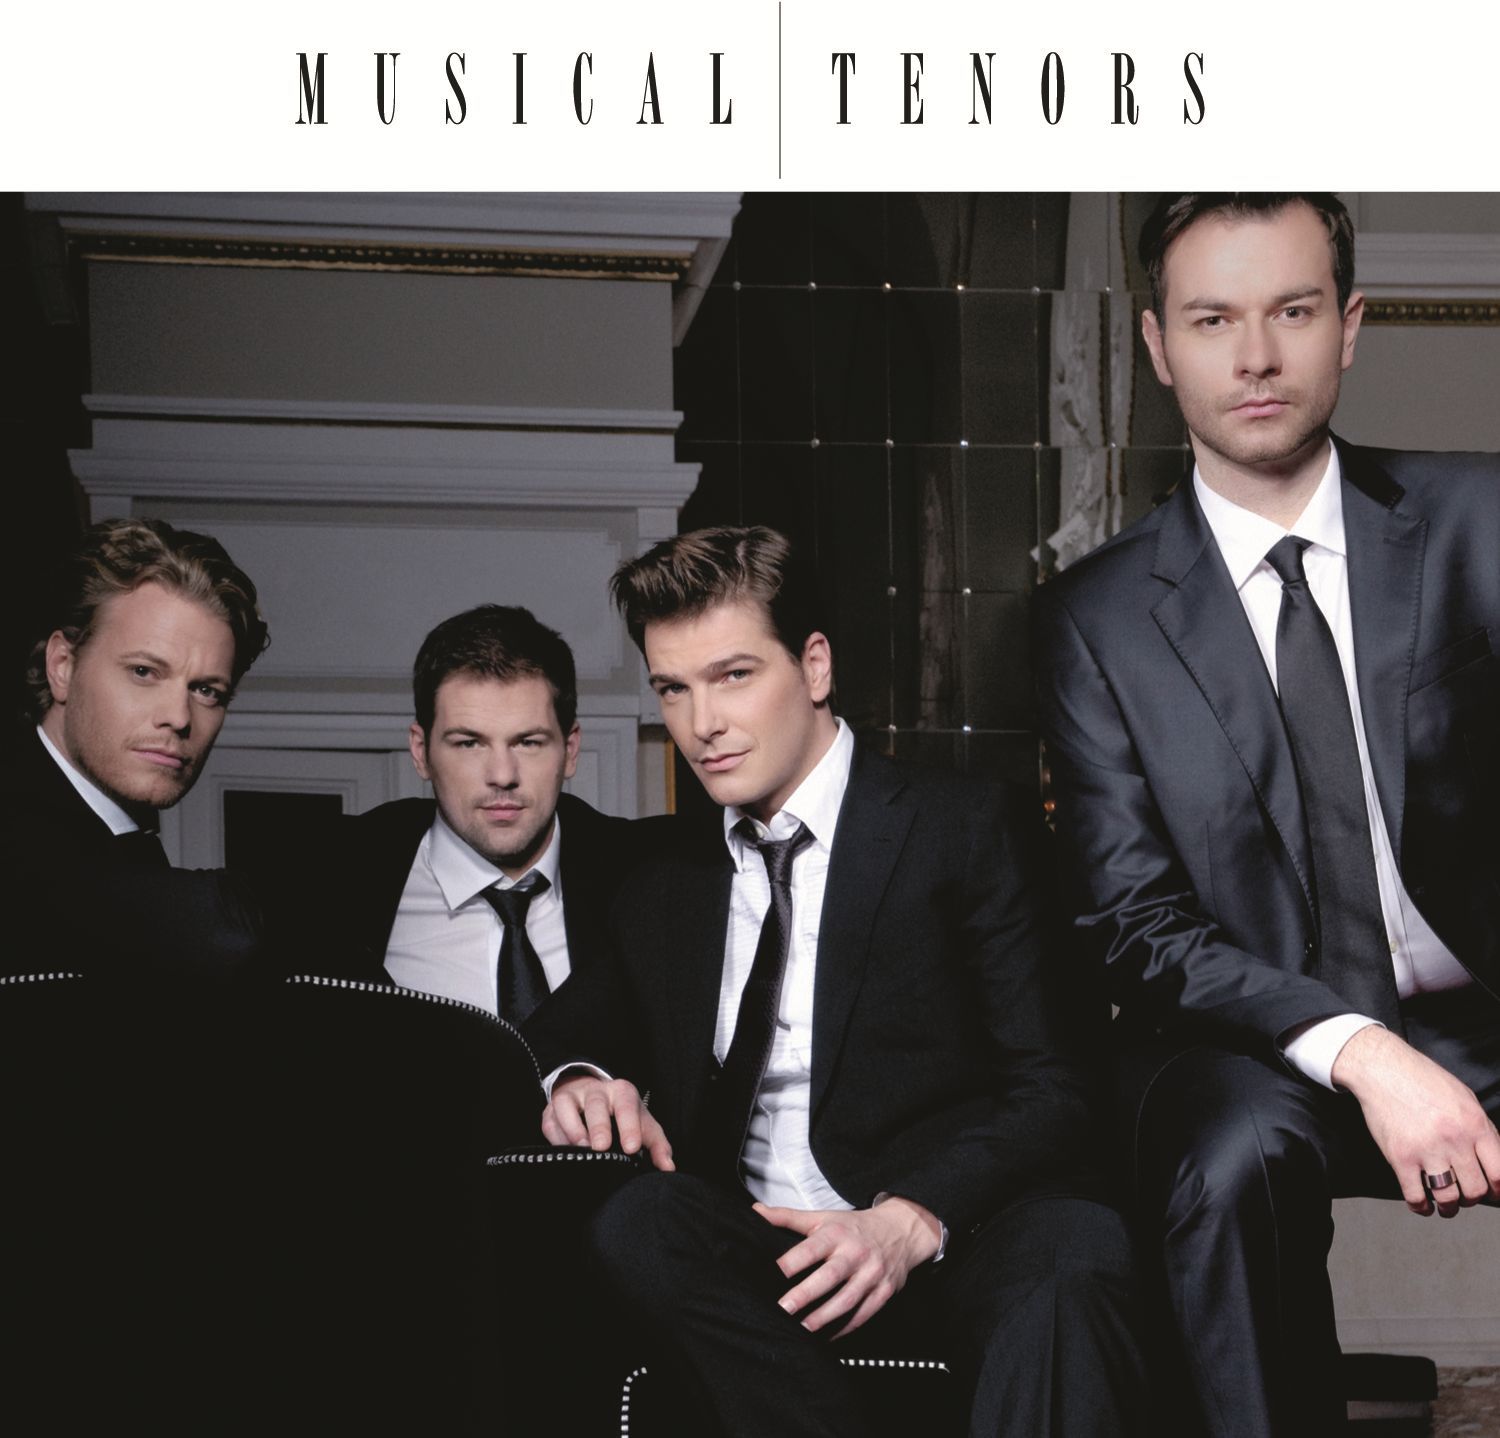 Musical Tenors (Ammann, Müller, Seibert, Stanke) - Musical tenors